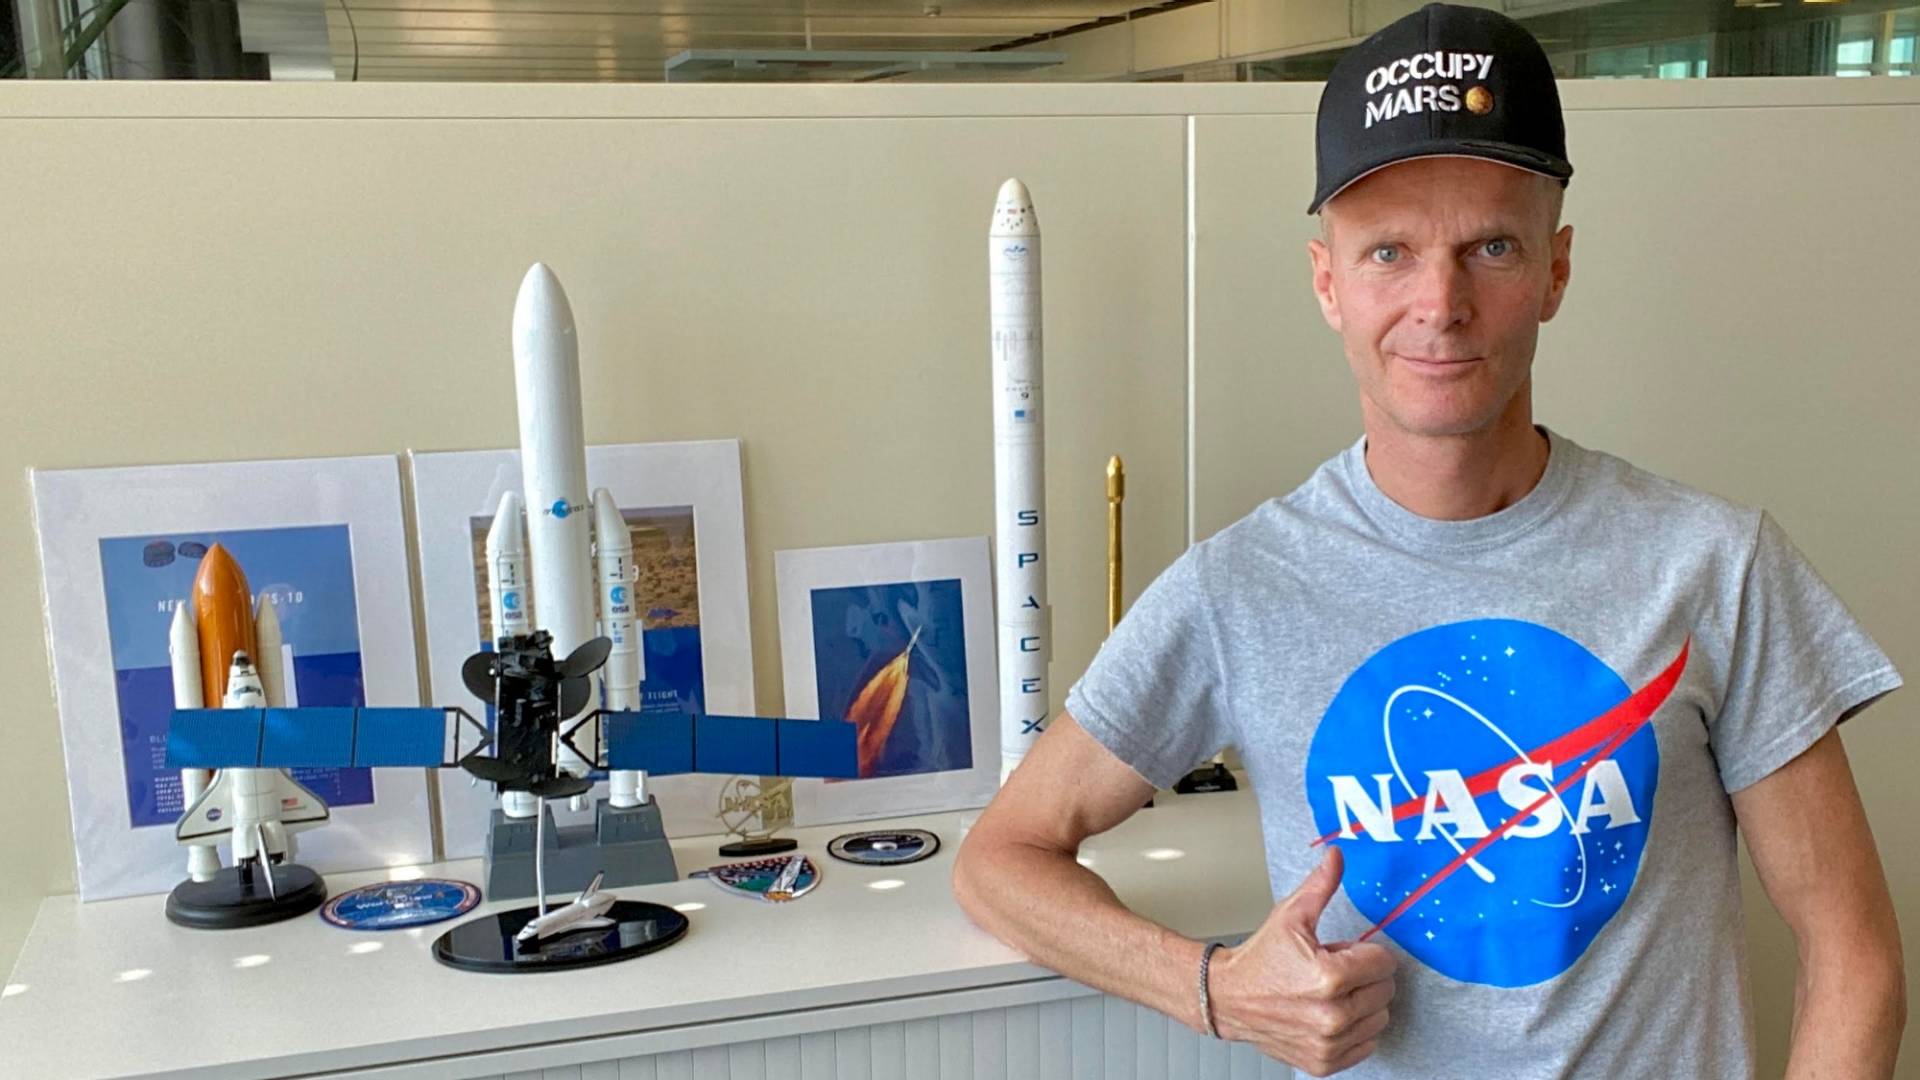 Un homme en t-shirt de la NASA à côté d’une armoire de bureau